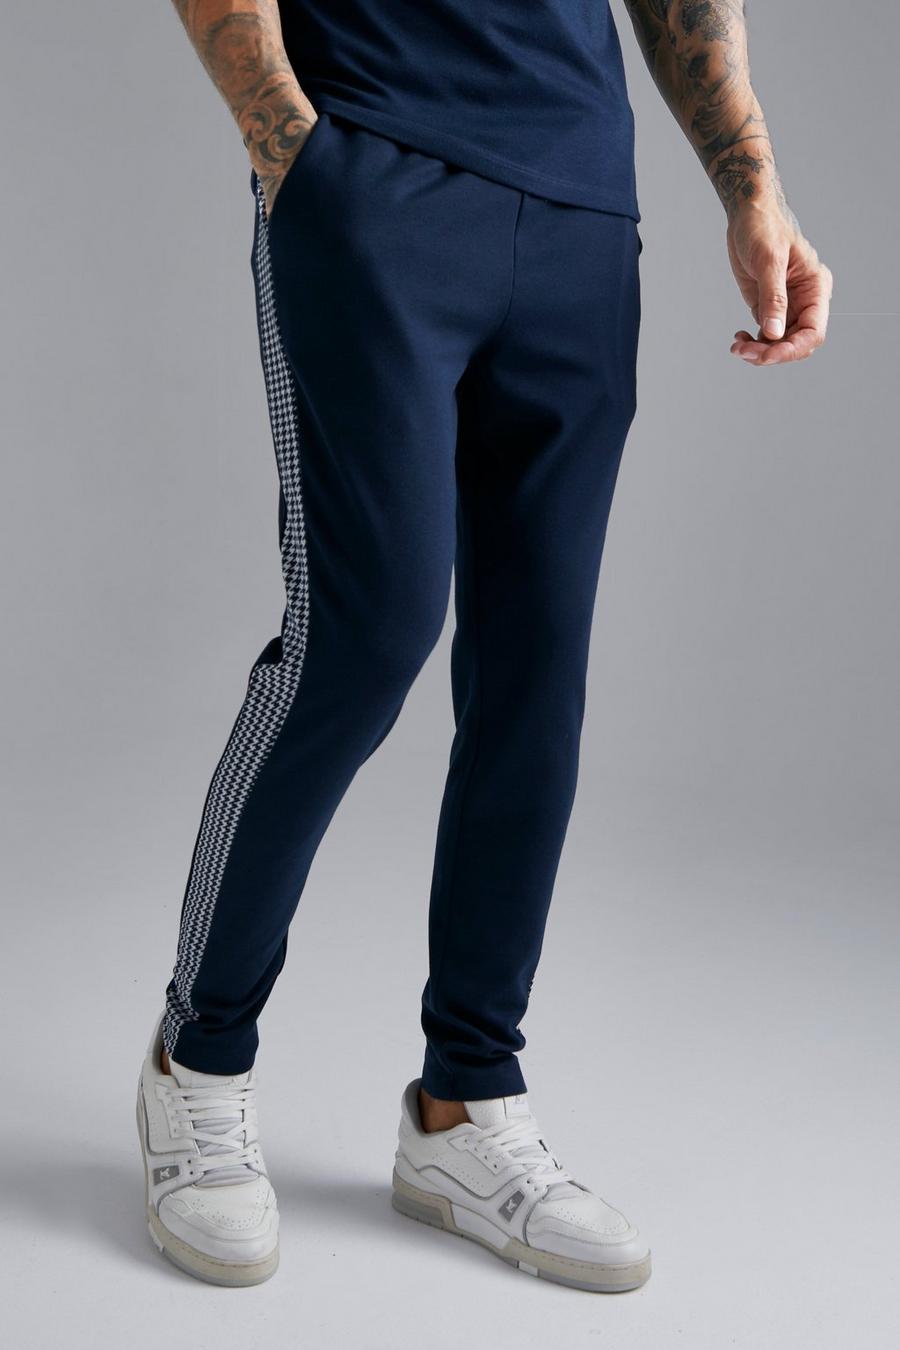 Pantalón deportivo pitillo con panel de jacquard, Navy azul marino